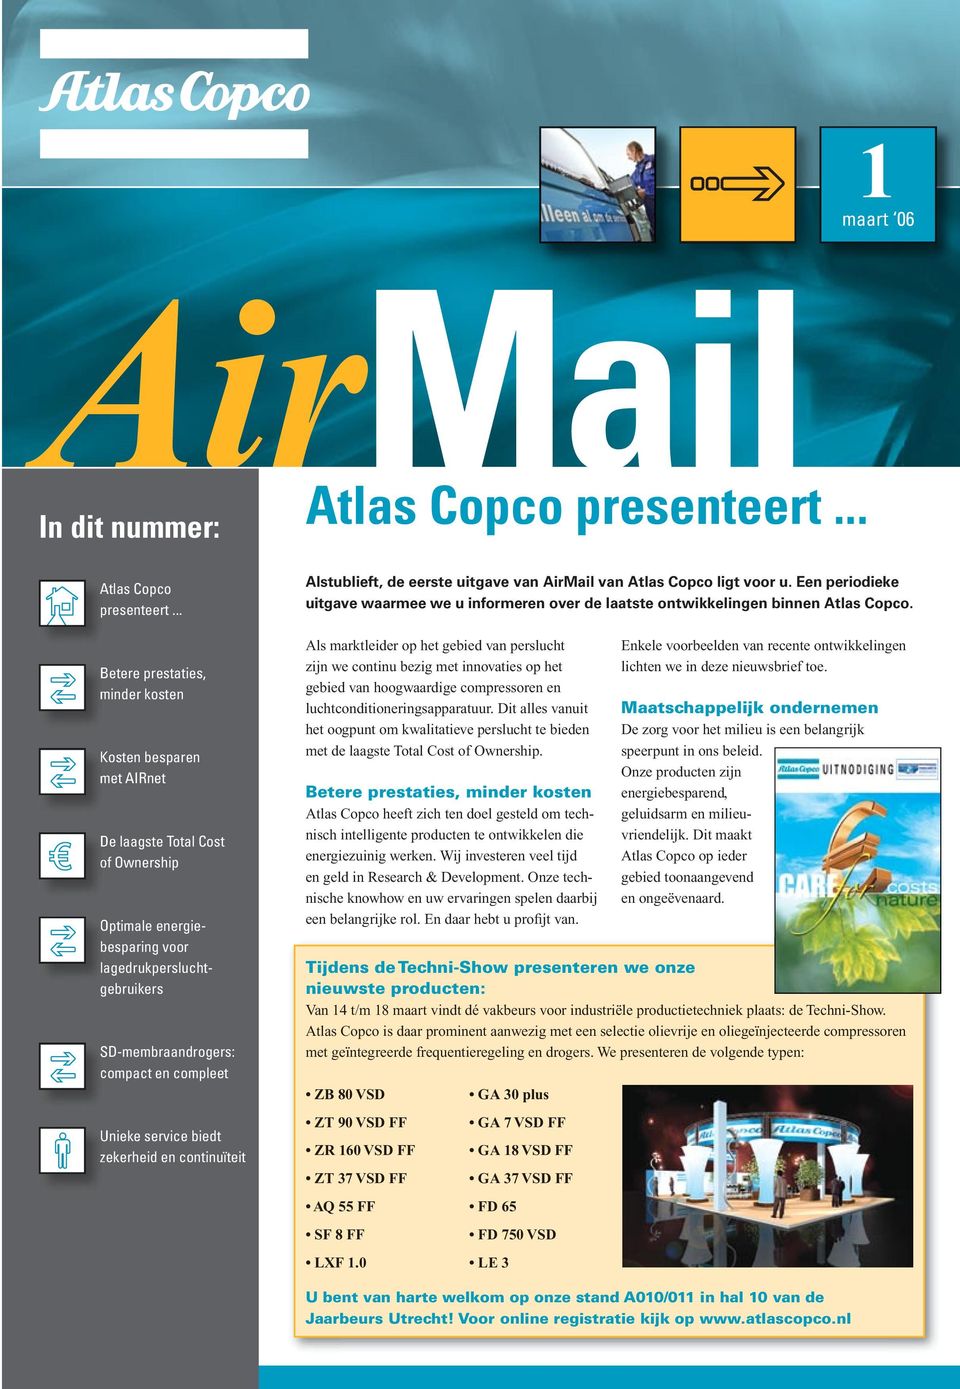 Unieke service biedt zekerheid en continuïteit Alstublieft, de eerste uitgave van AirMail van Atlas Copco ligt voor u.